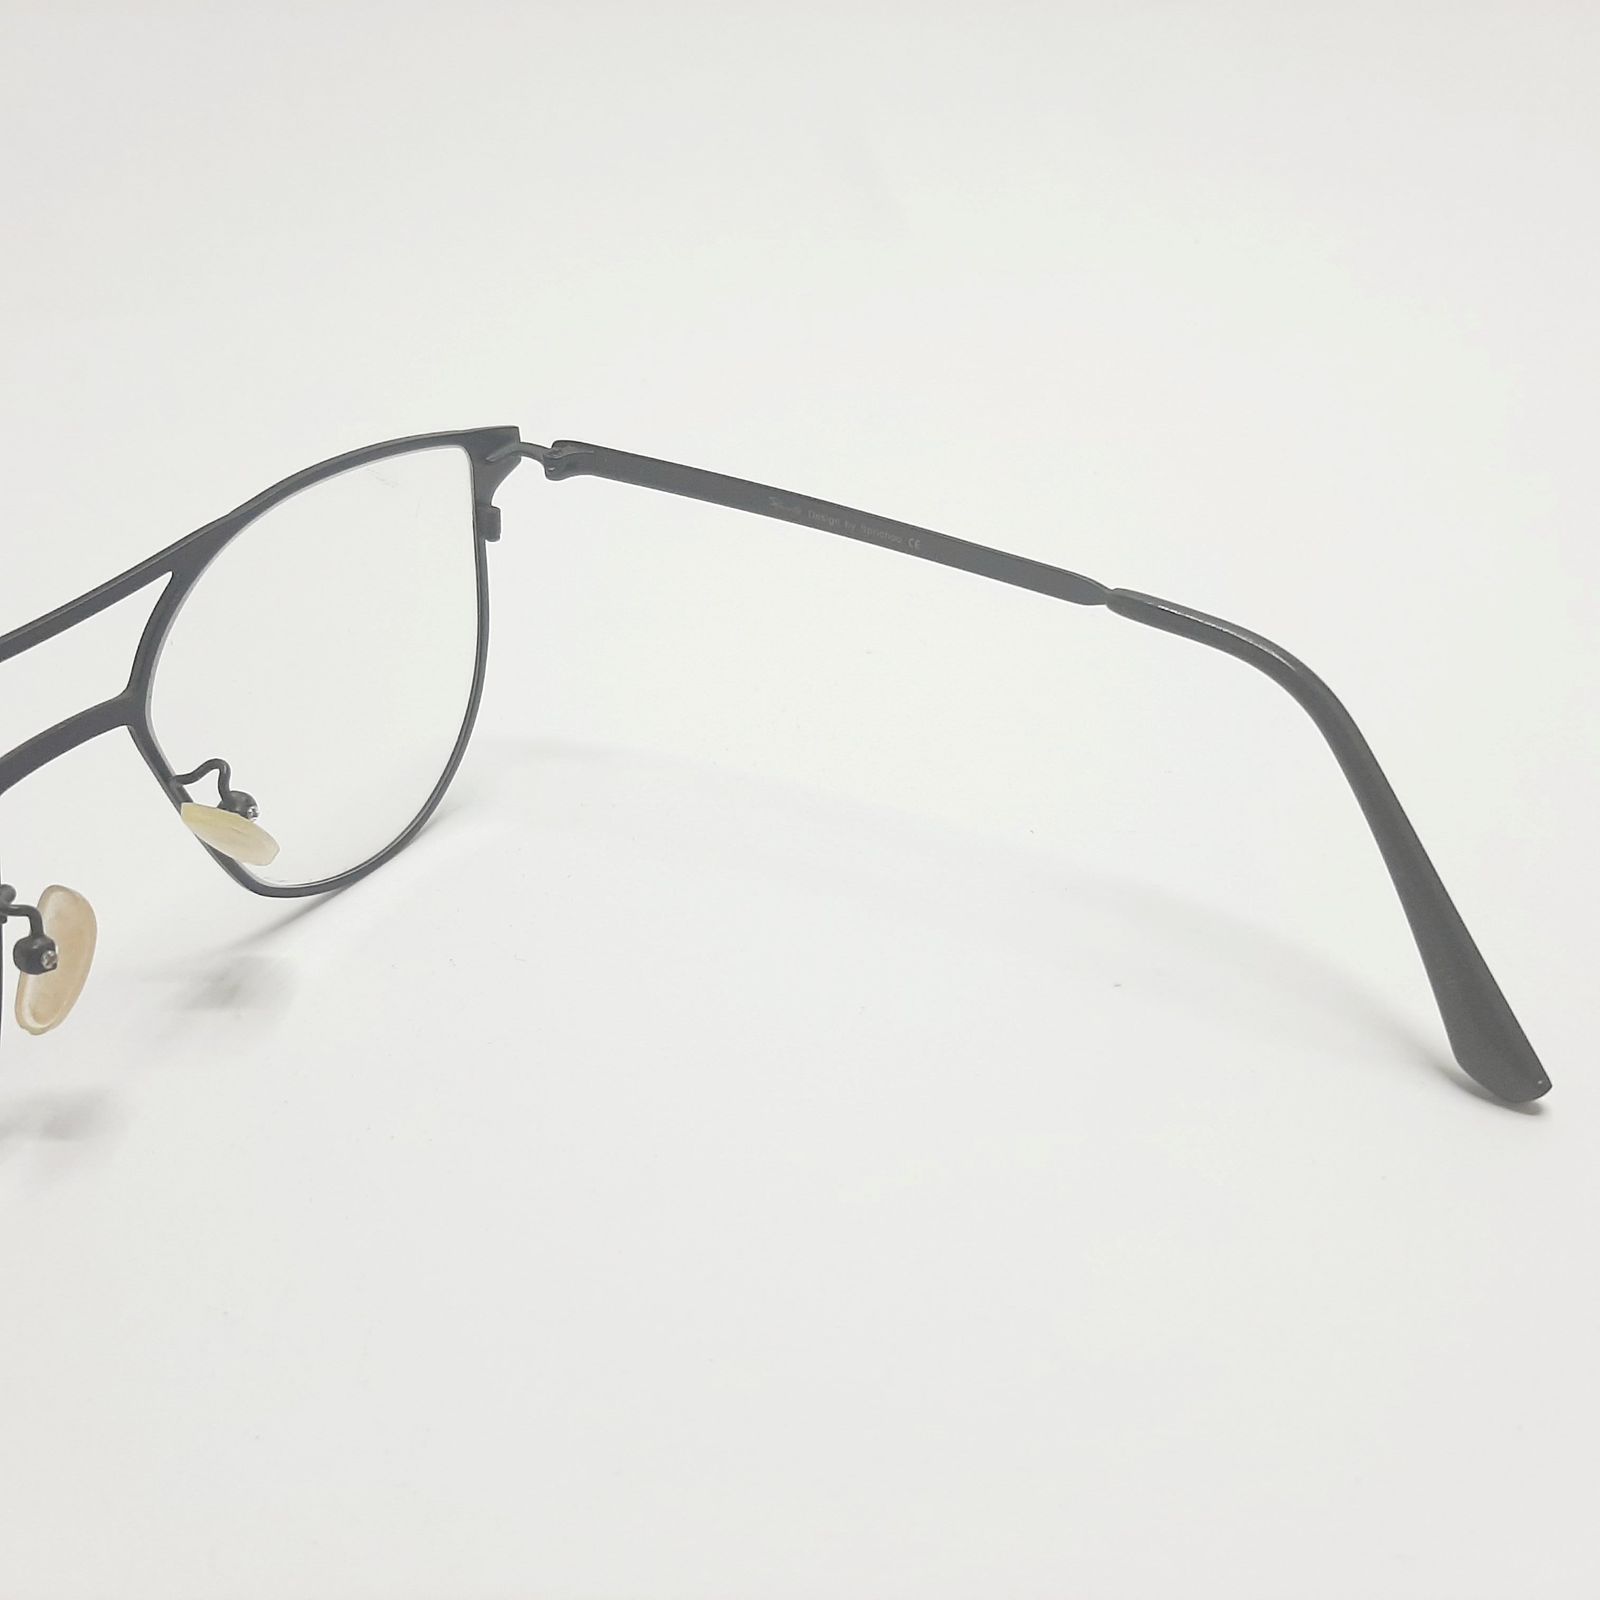 فریم عینک طبی پاواروتی مدل P82001c4 -  - 7